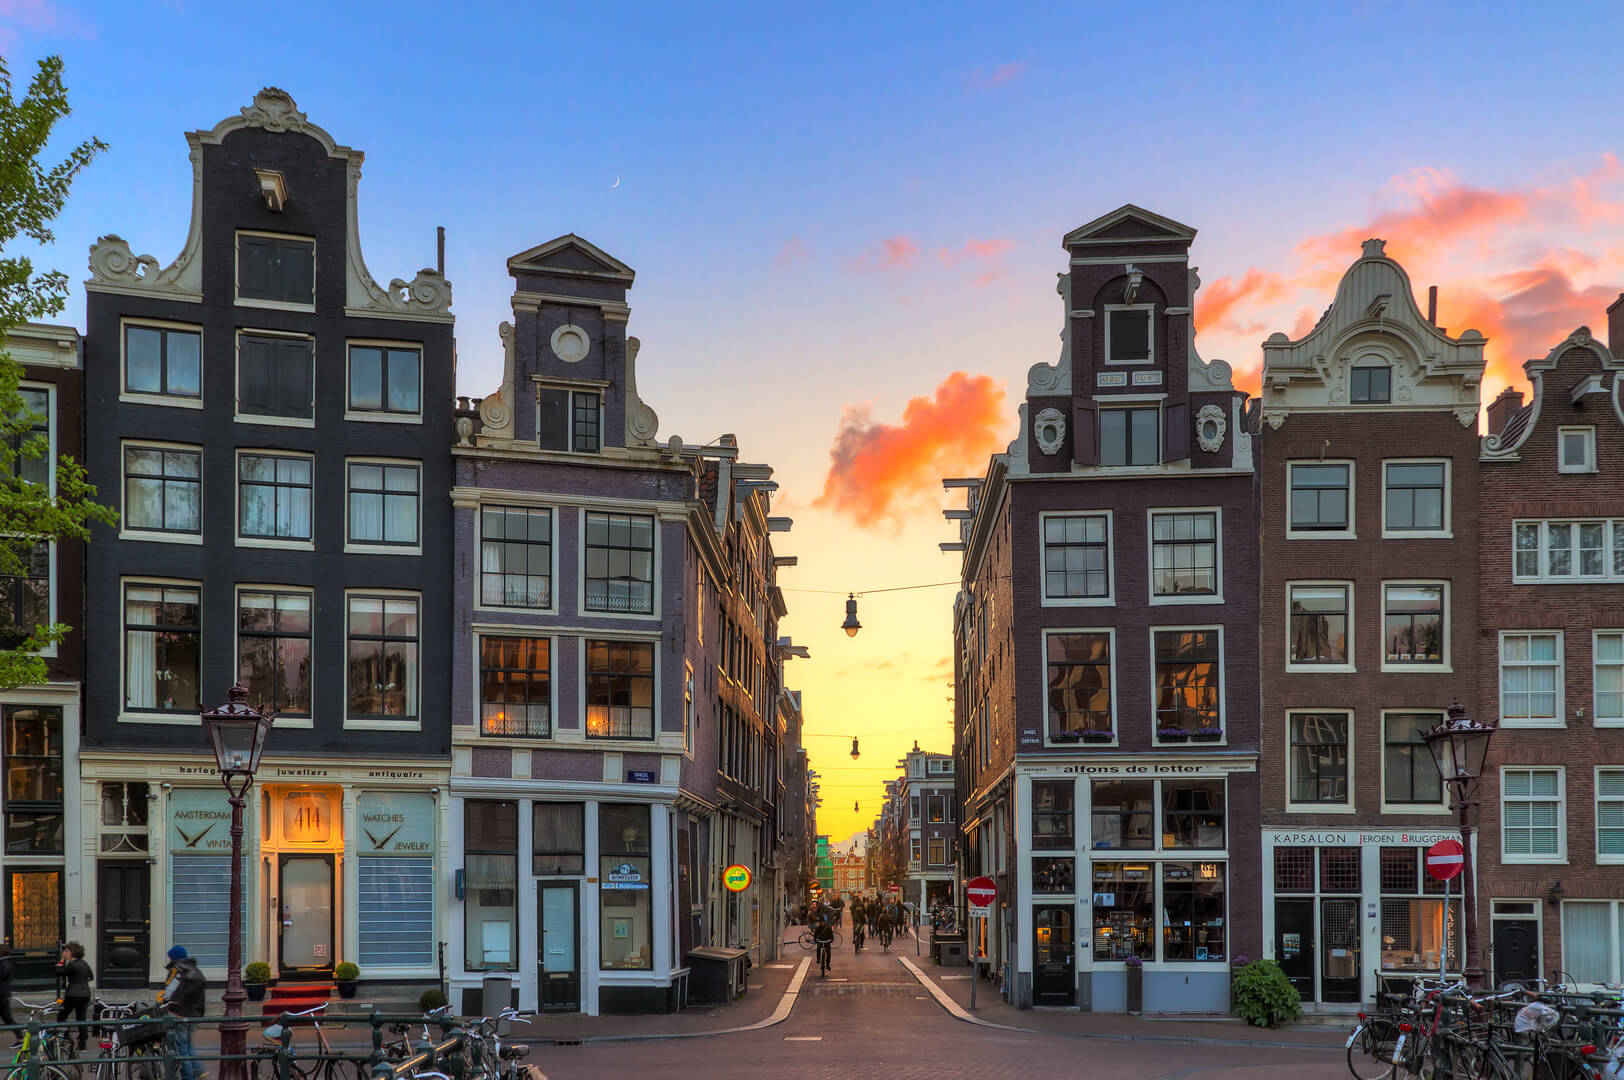 Magnifique coucher de soleil dans l'une des neuf petites rues, une destination touristique populaire à Amsterdam, aux Pays-Bas.